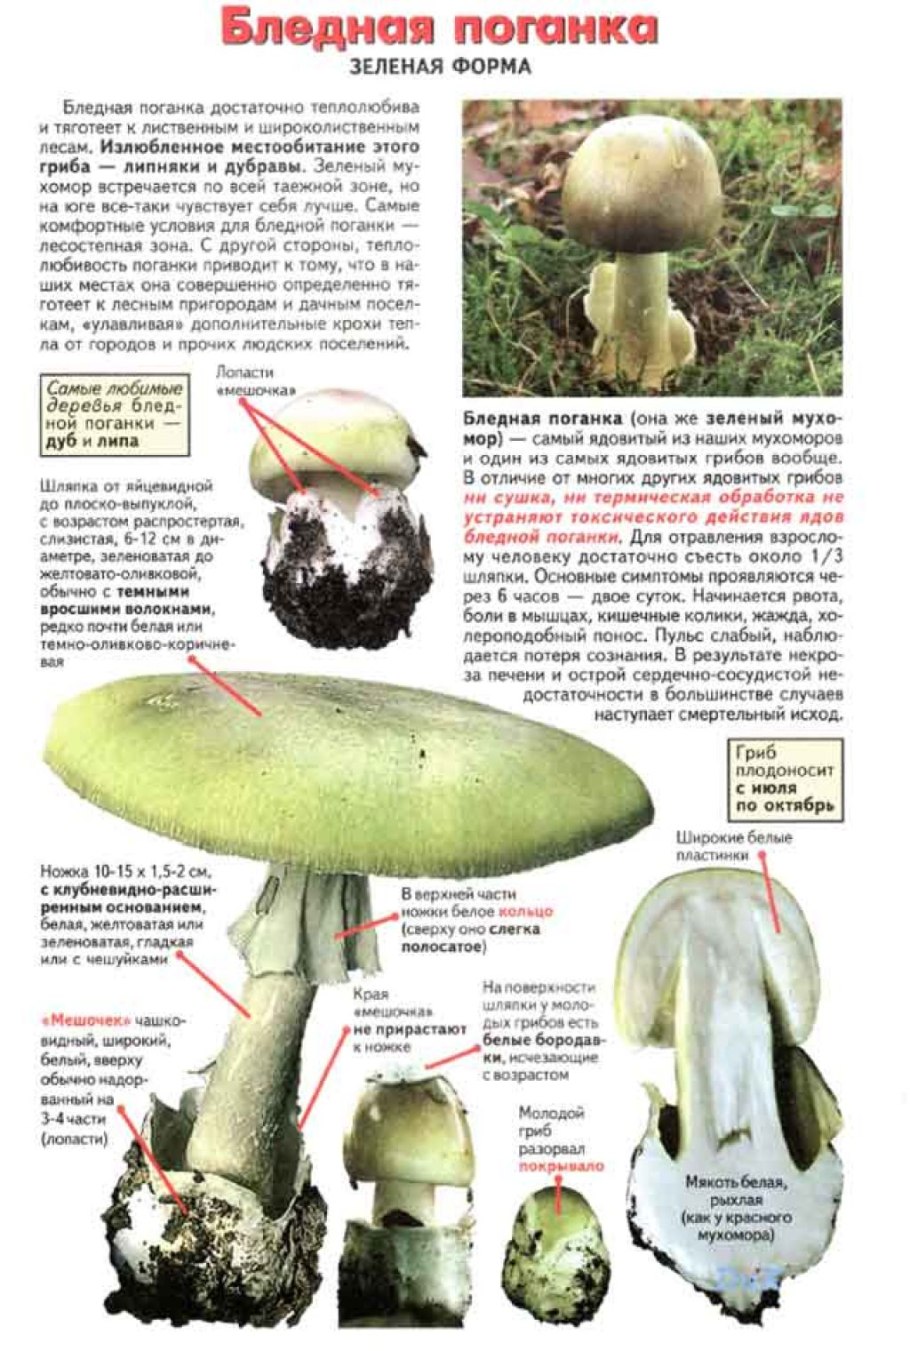 Бледная поганка характеристика гриба